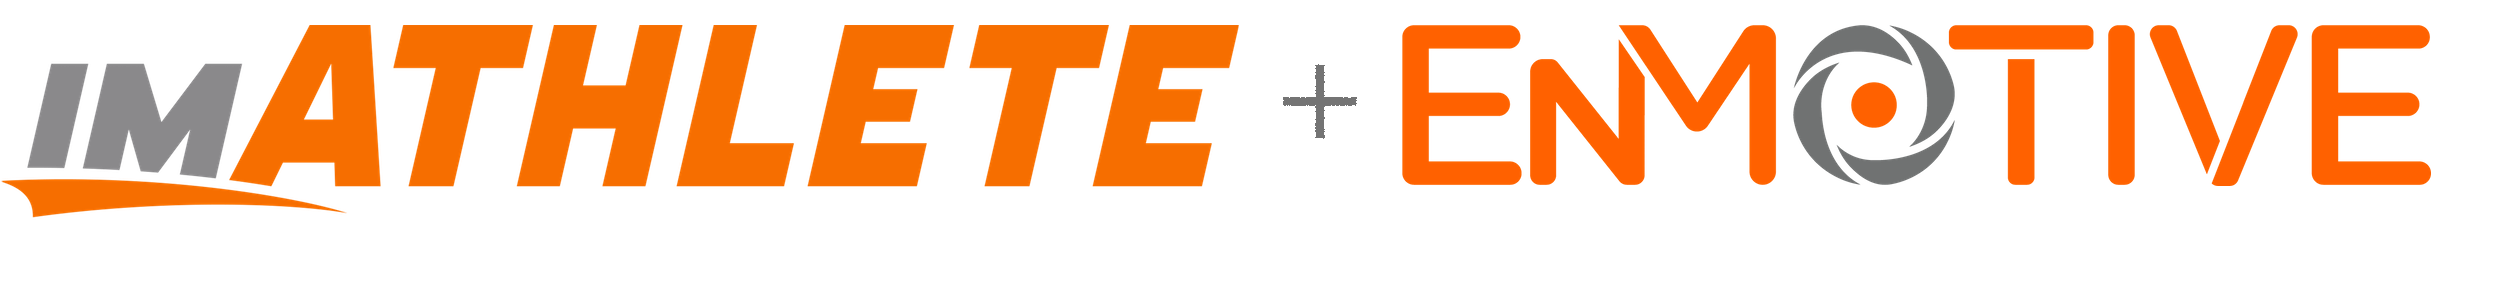 imATHLETE + EnMotive logo Transparent